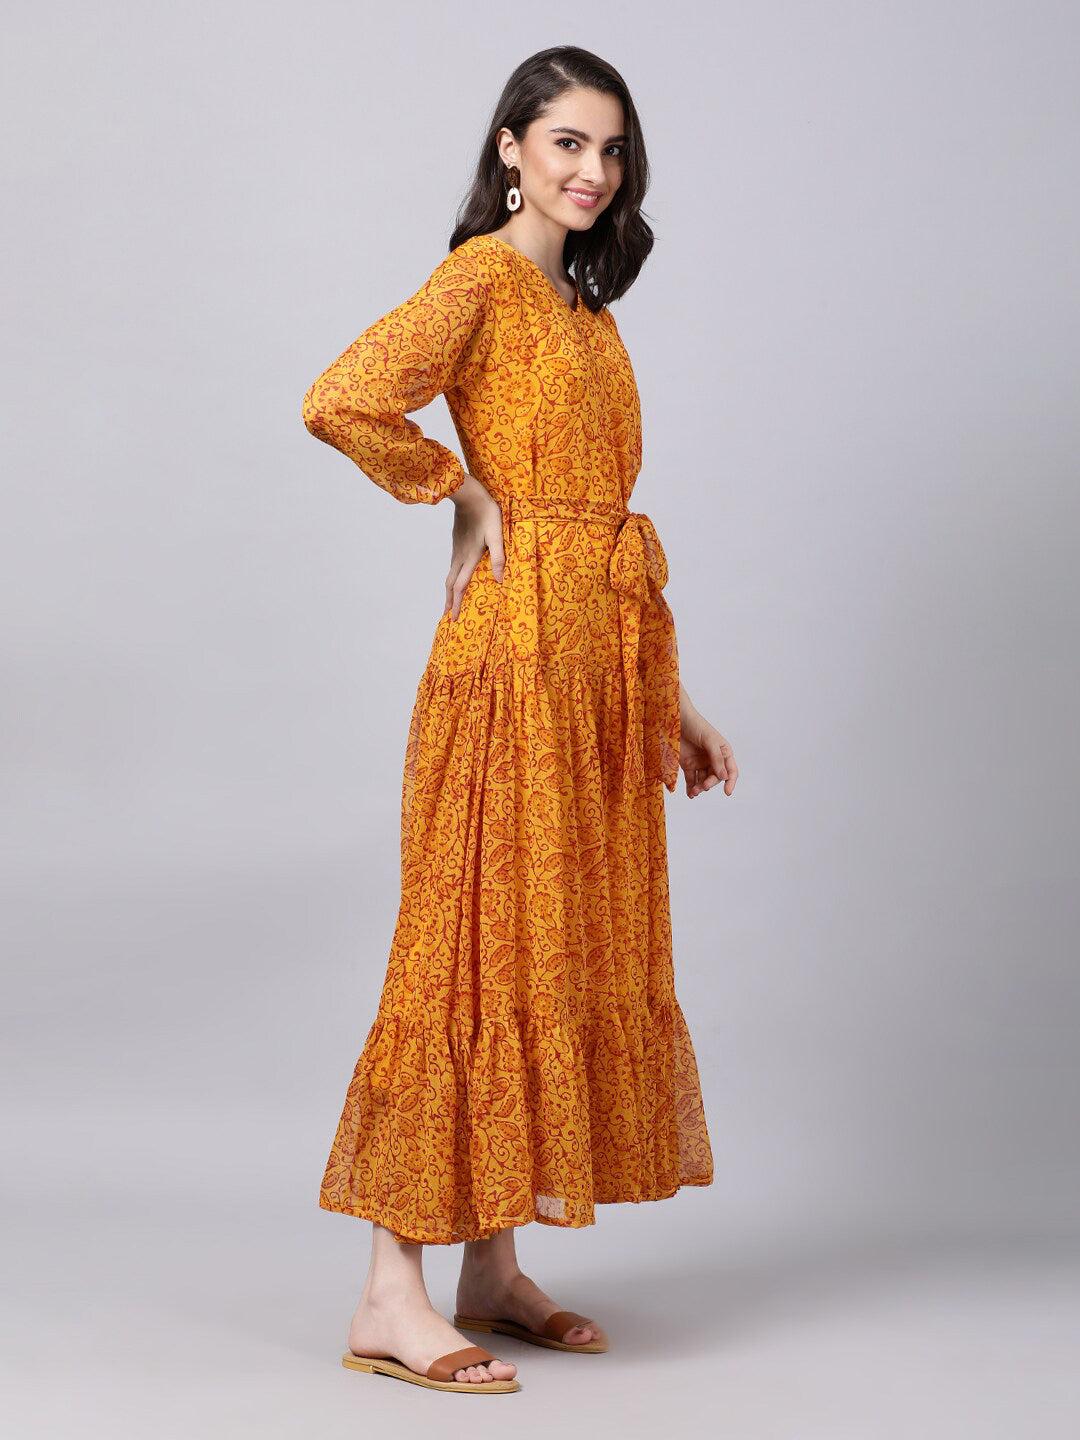 Souchii Yellow Floral Layered Chiffon Maxi Dress - Distacart